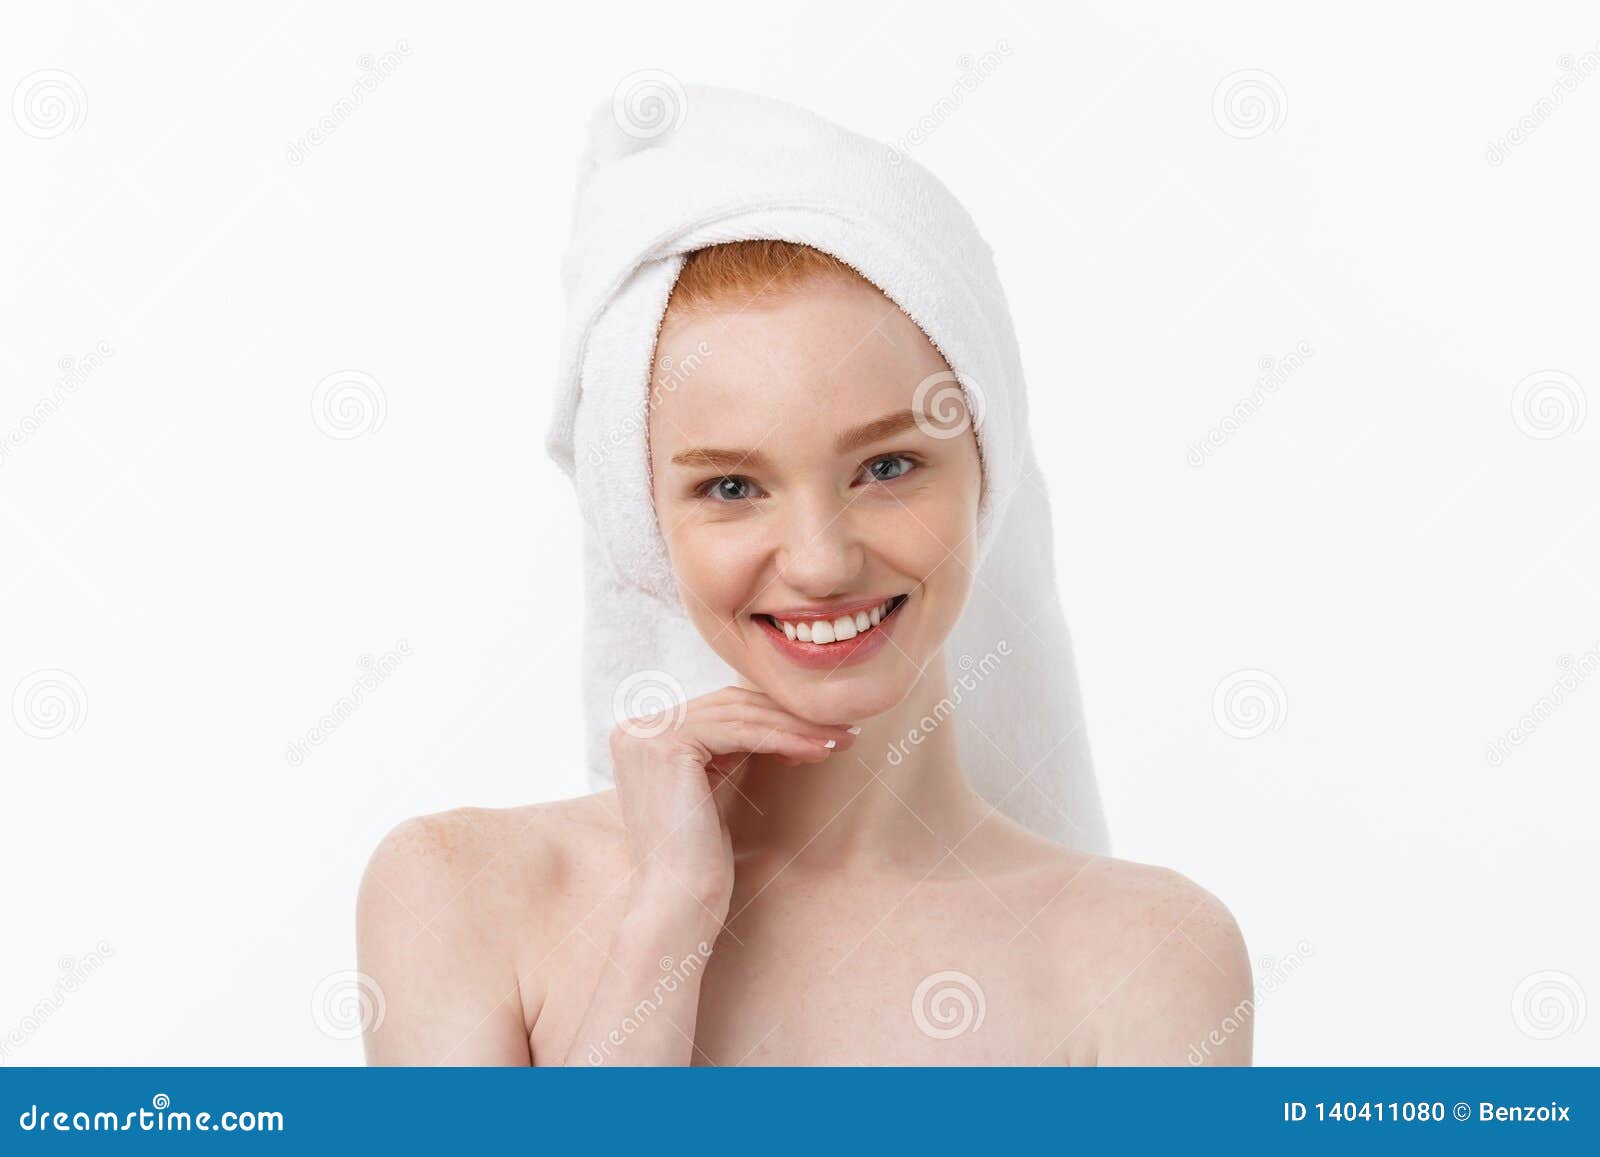 Женщина после ванной. Девушка с полотенцем на голове. Девушка после ванны лицо.